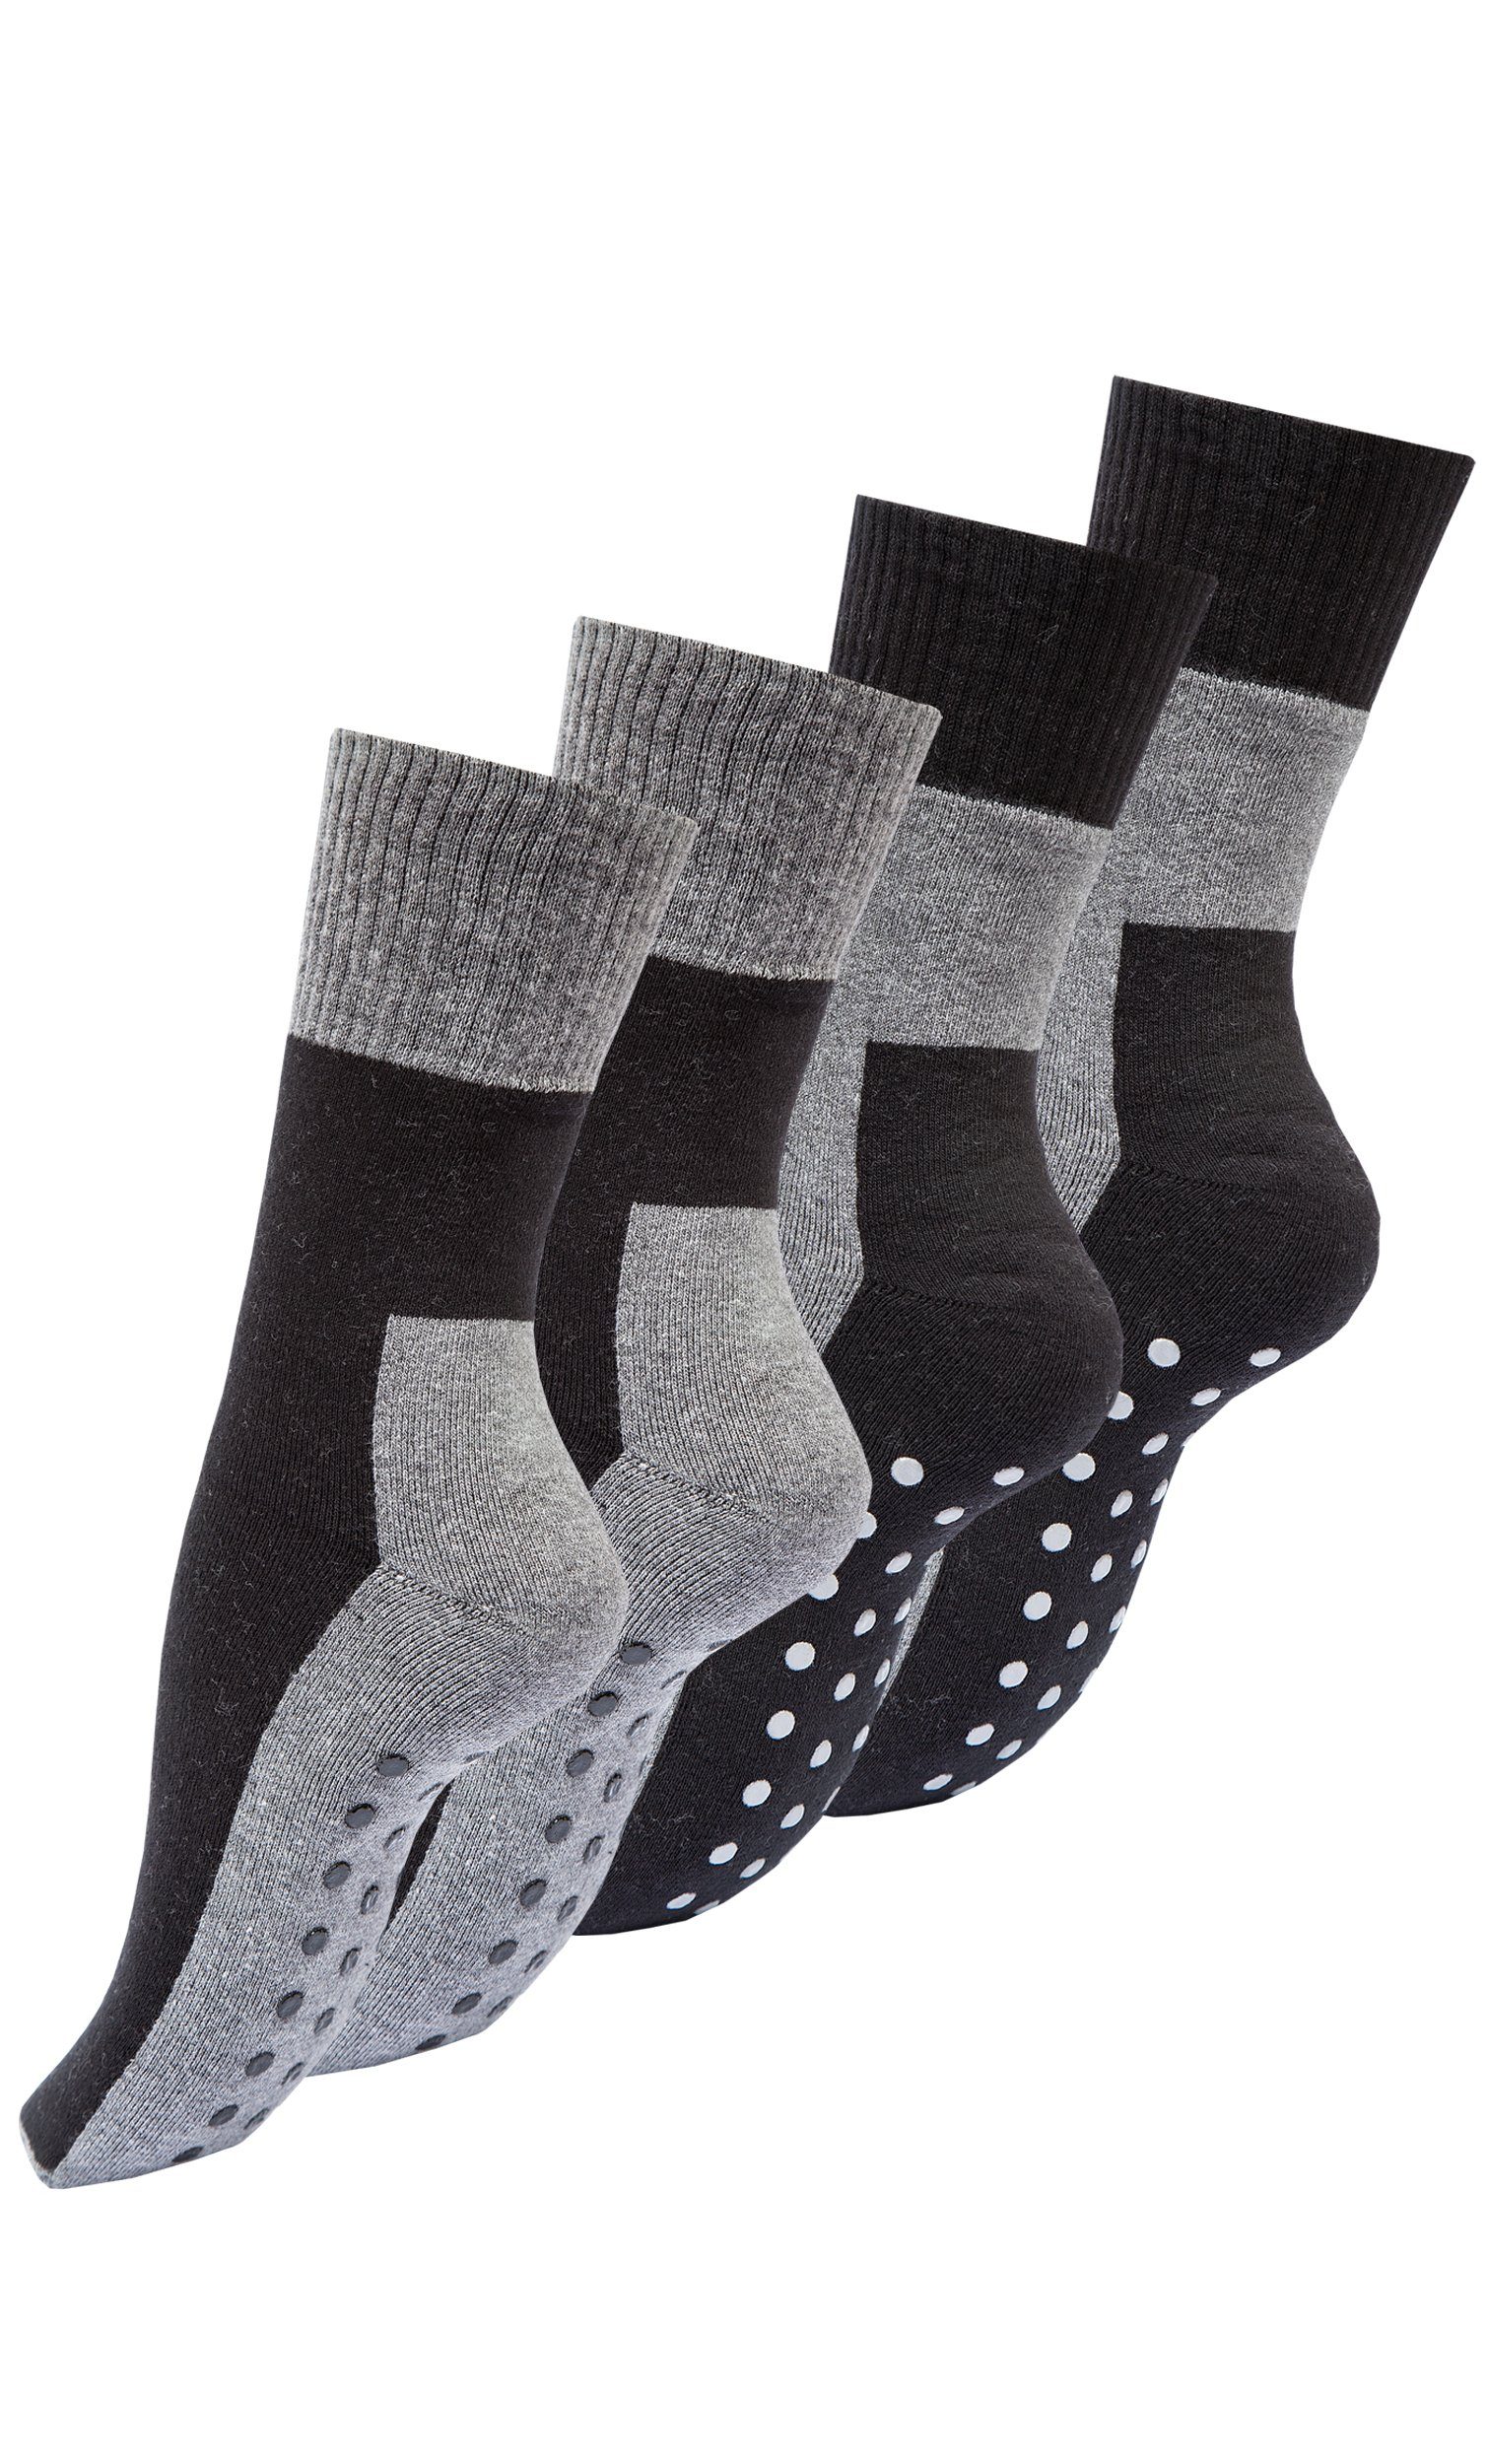 Angebot zur Verfügung stellen Vincent Creation® ABS-Socken Stoppersocken (4-Paar) mit ABS-Sohle